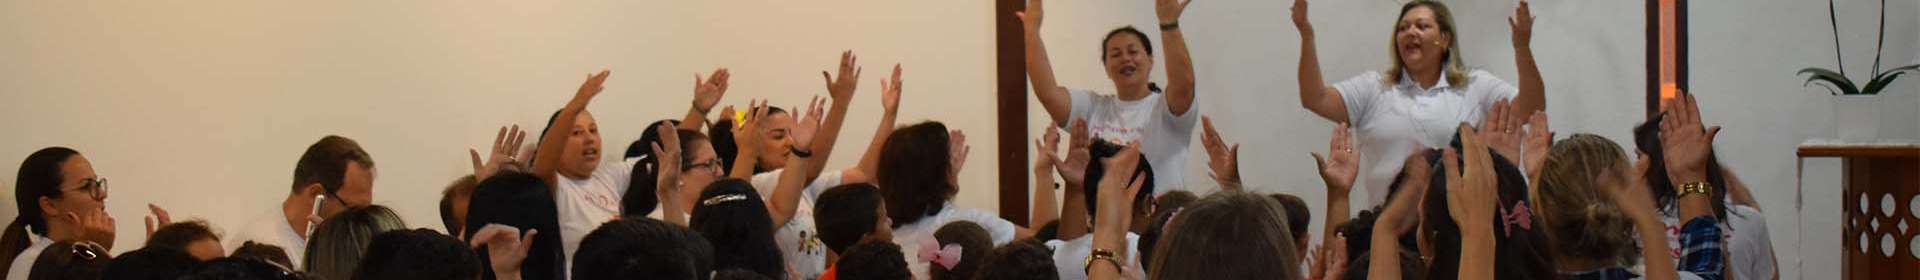 Seminário de crianças, intermediários e adolescentes da Igreja Cristã Maranata